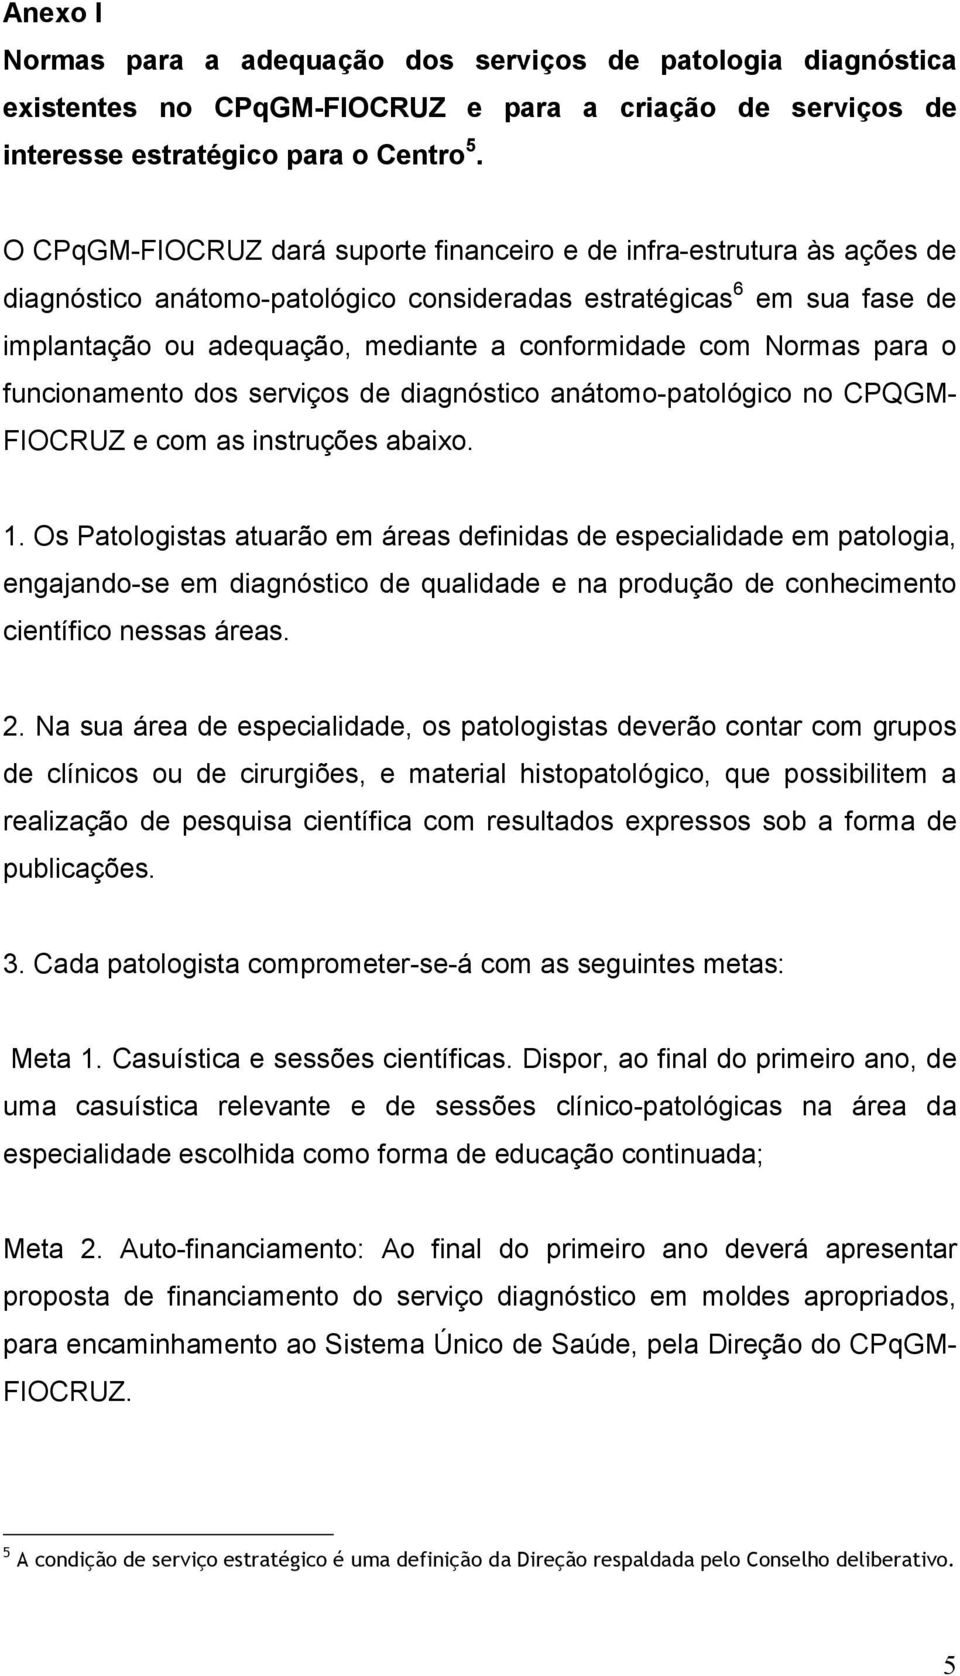 com Normas para o funcionamento dos serviços de diagnóstico anátomo-patológico no CPQGM- FIOCRUZ e com as instruções abaixo. 1.